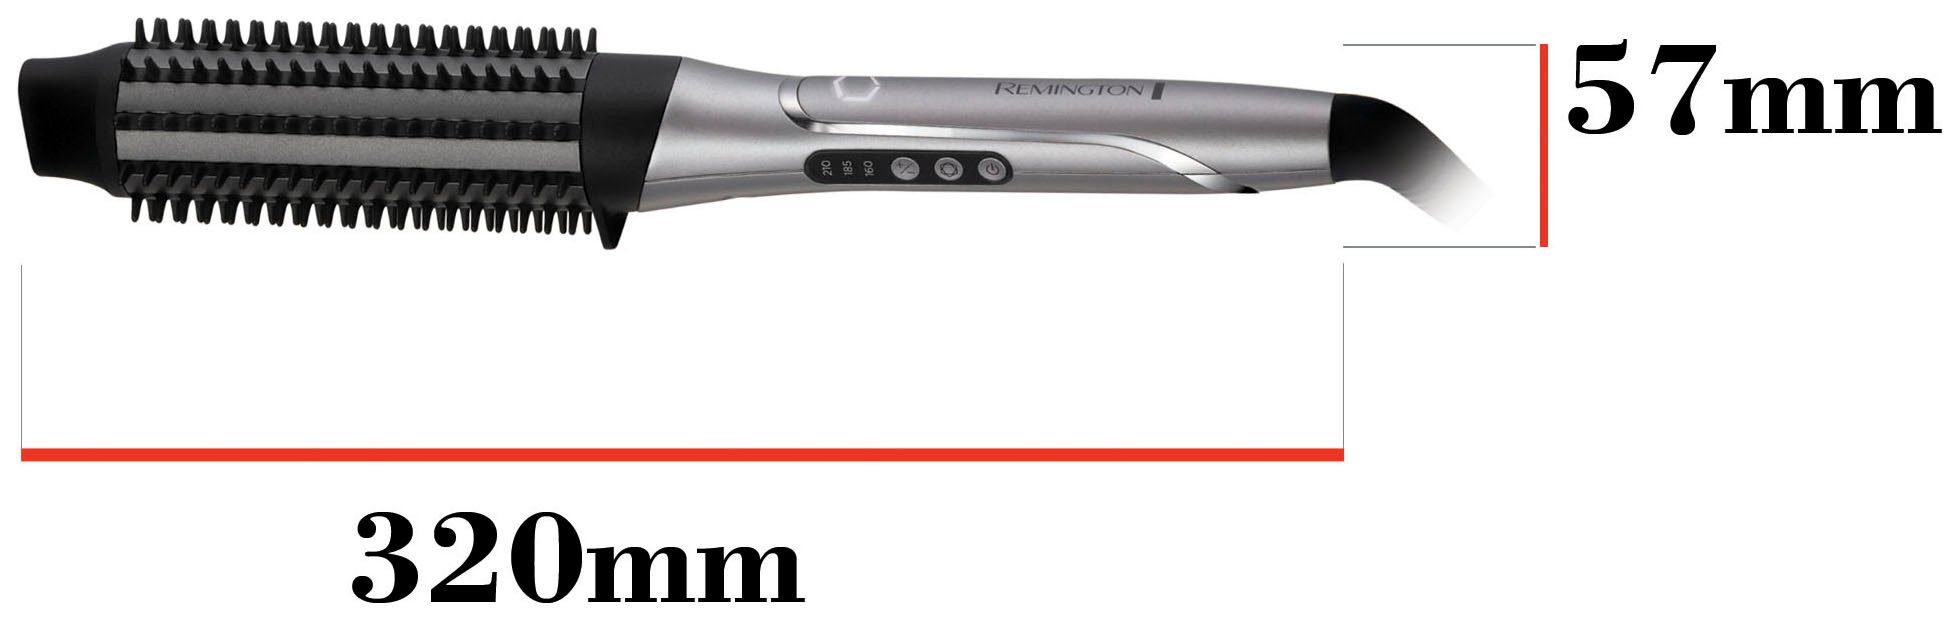 You Volumenbürste (lernfähiger Remington PROluxe personalisiert Airstyler/Rund-&Warmluftbürste) CB9800, Hitze Warmluftbürste